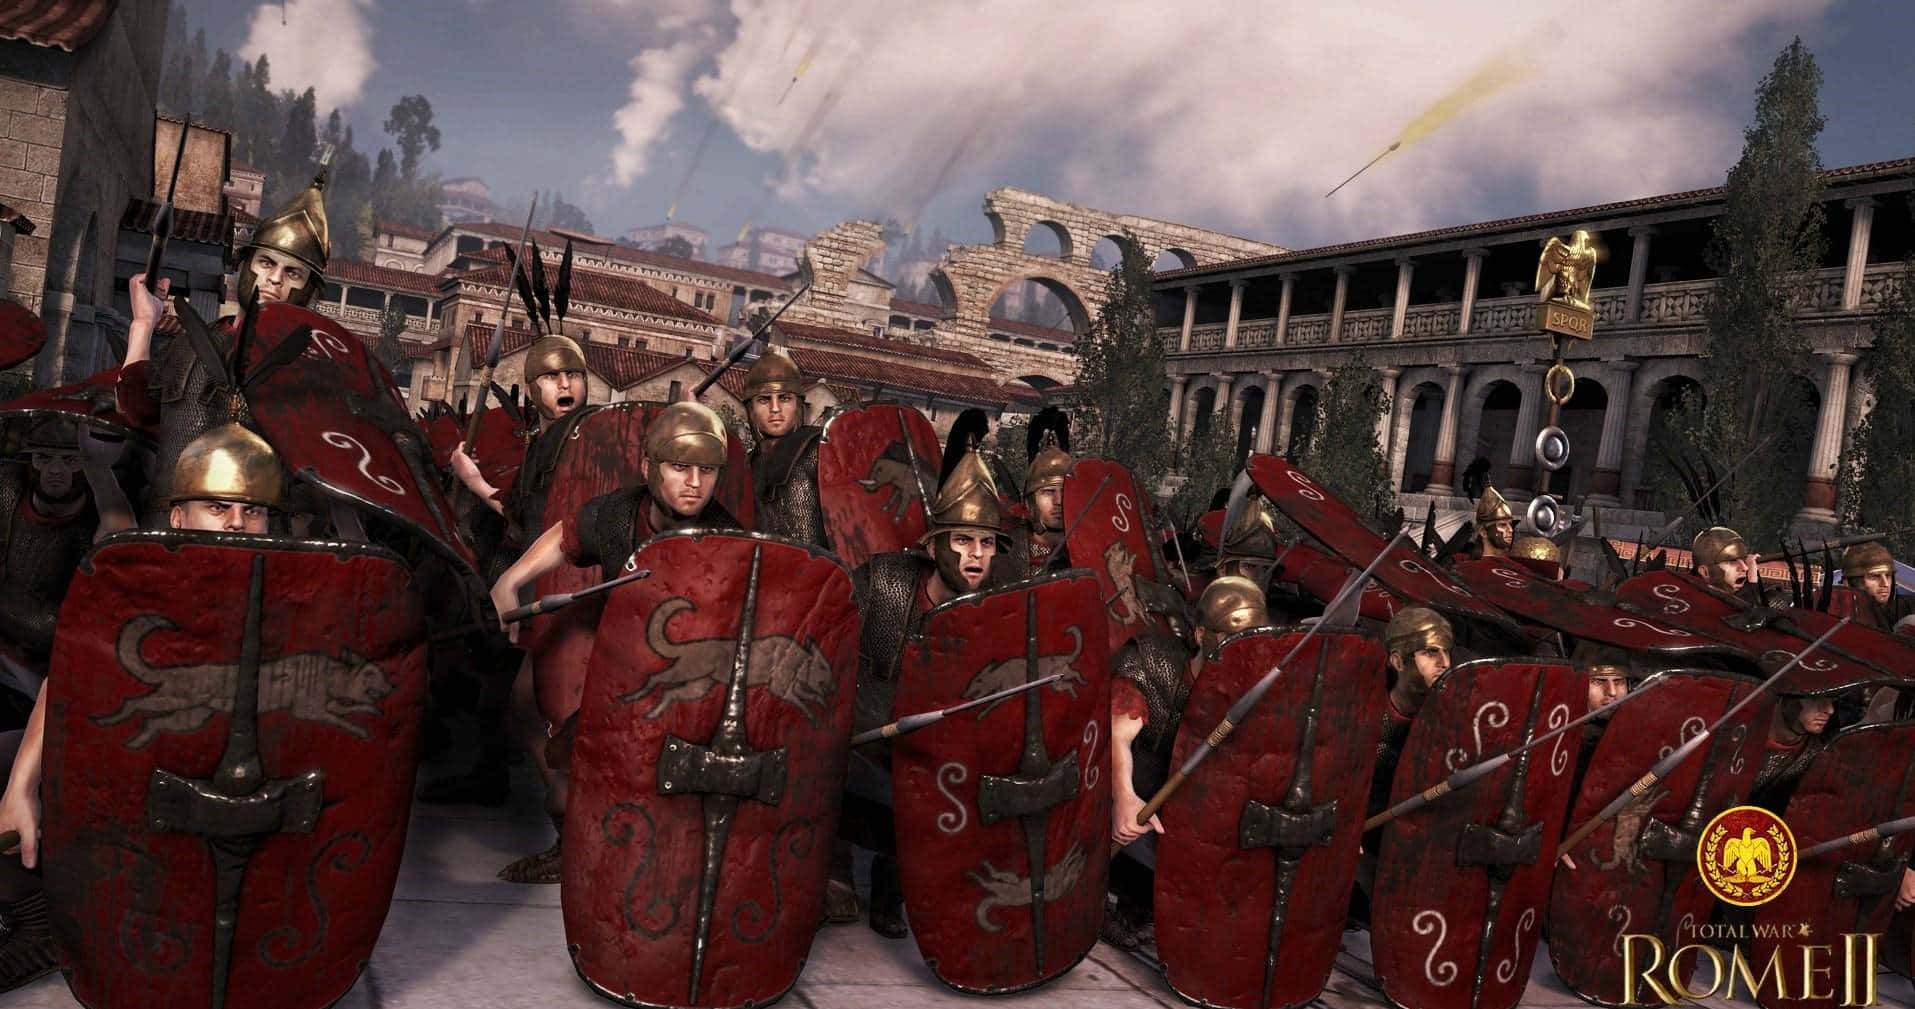 Mejoresfondos De Pantalla De Total War Rome 2 Con Edificios.